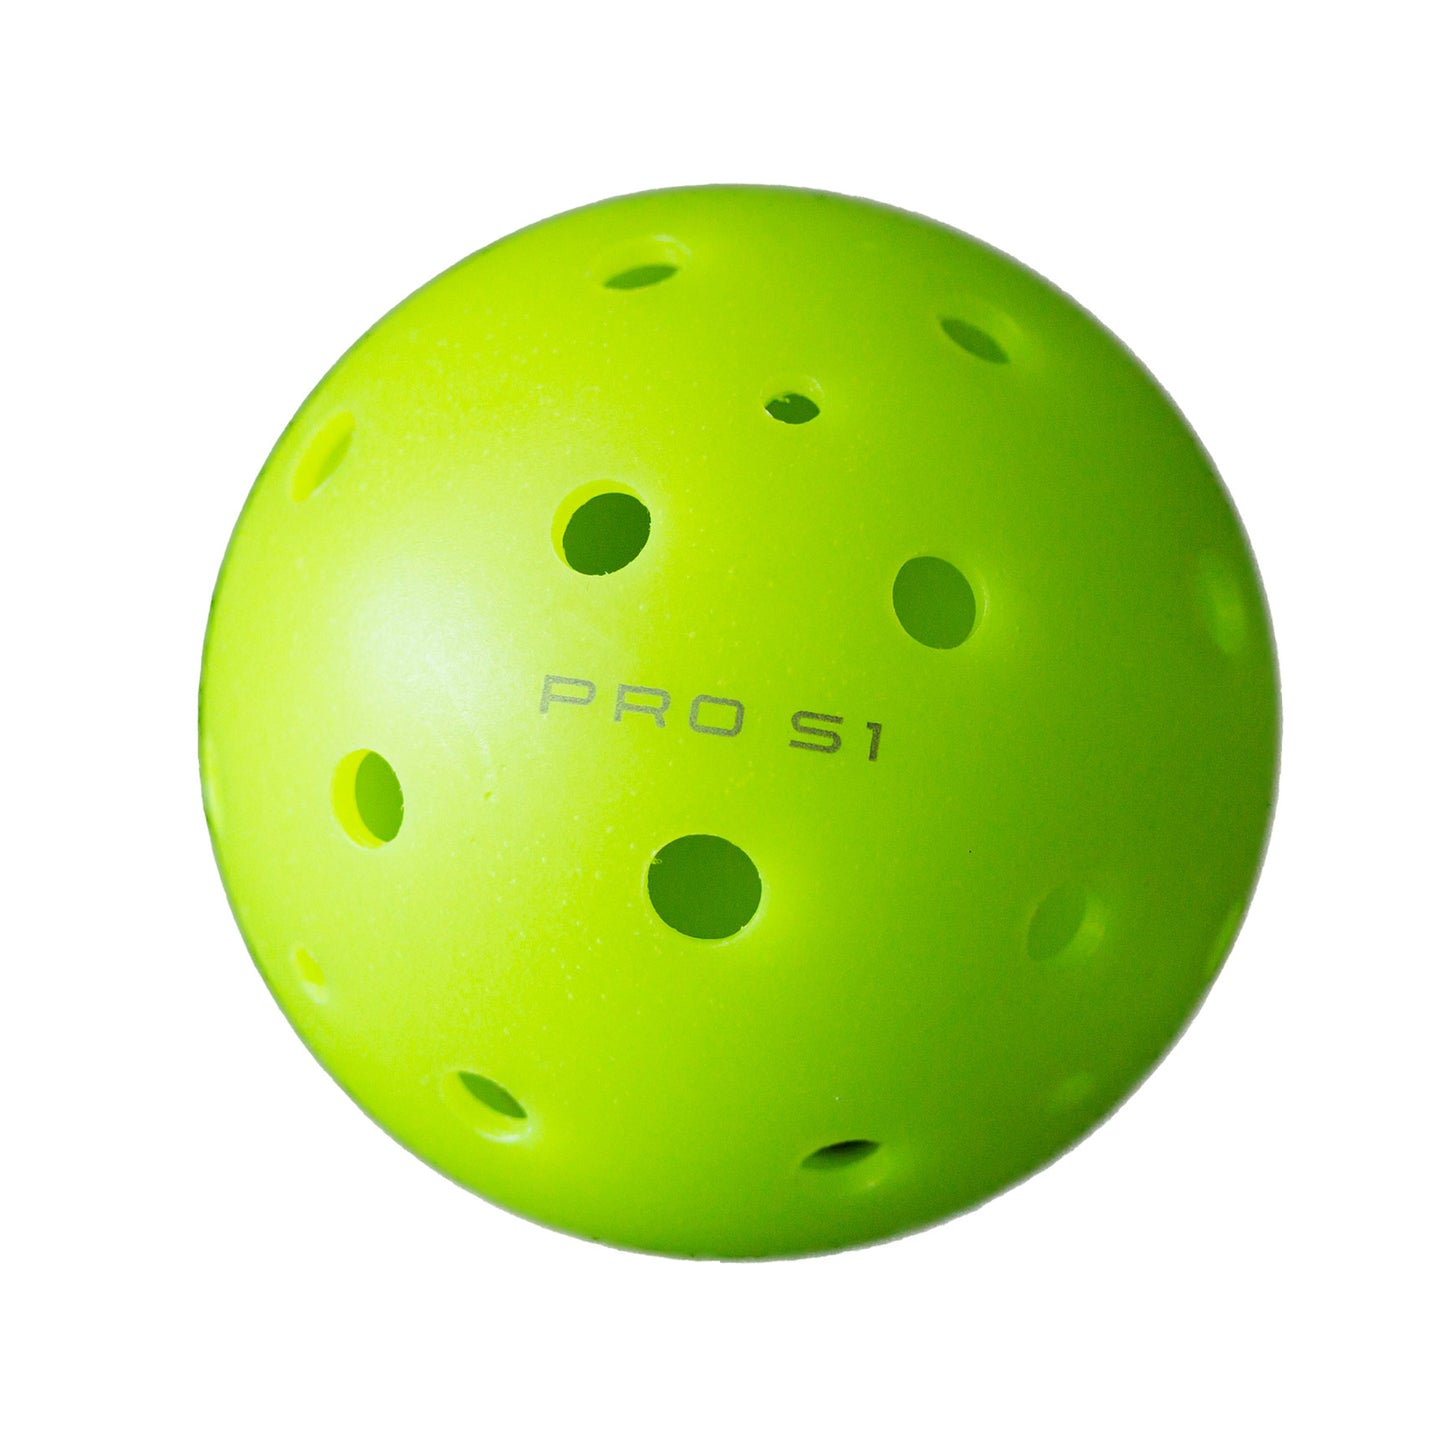 Selkirk Pro S1 Pickleball Ball, 24-Pack